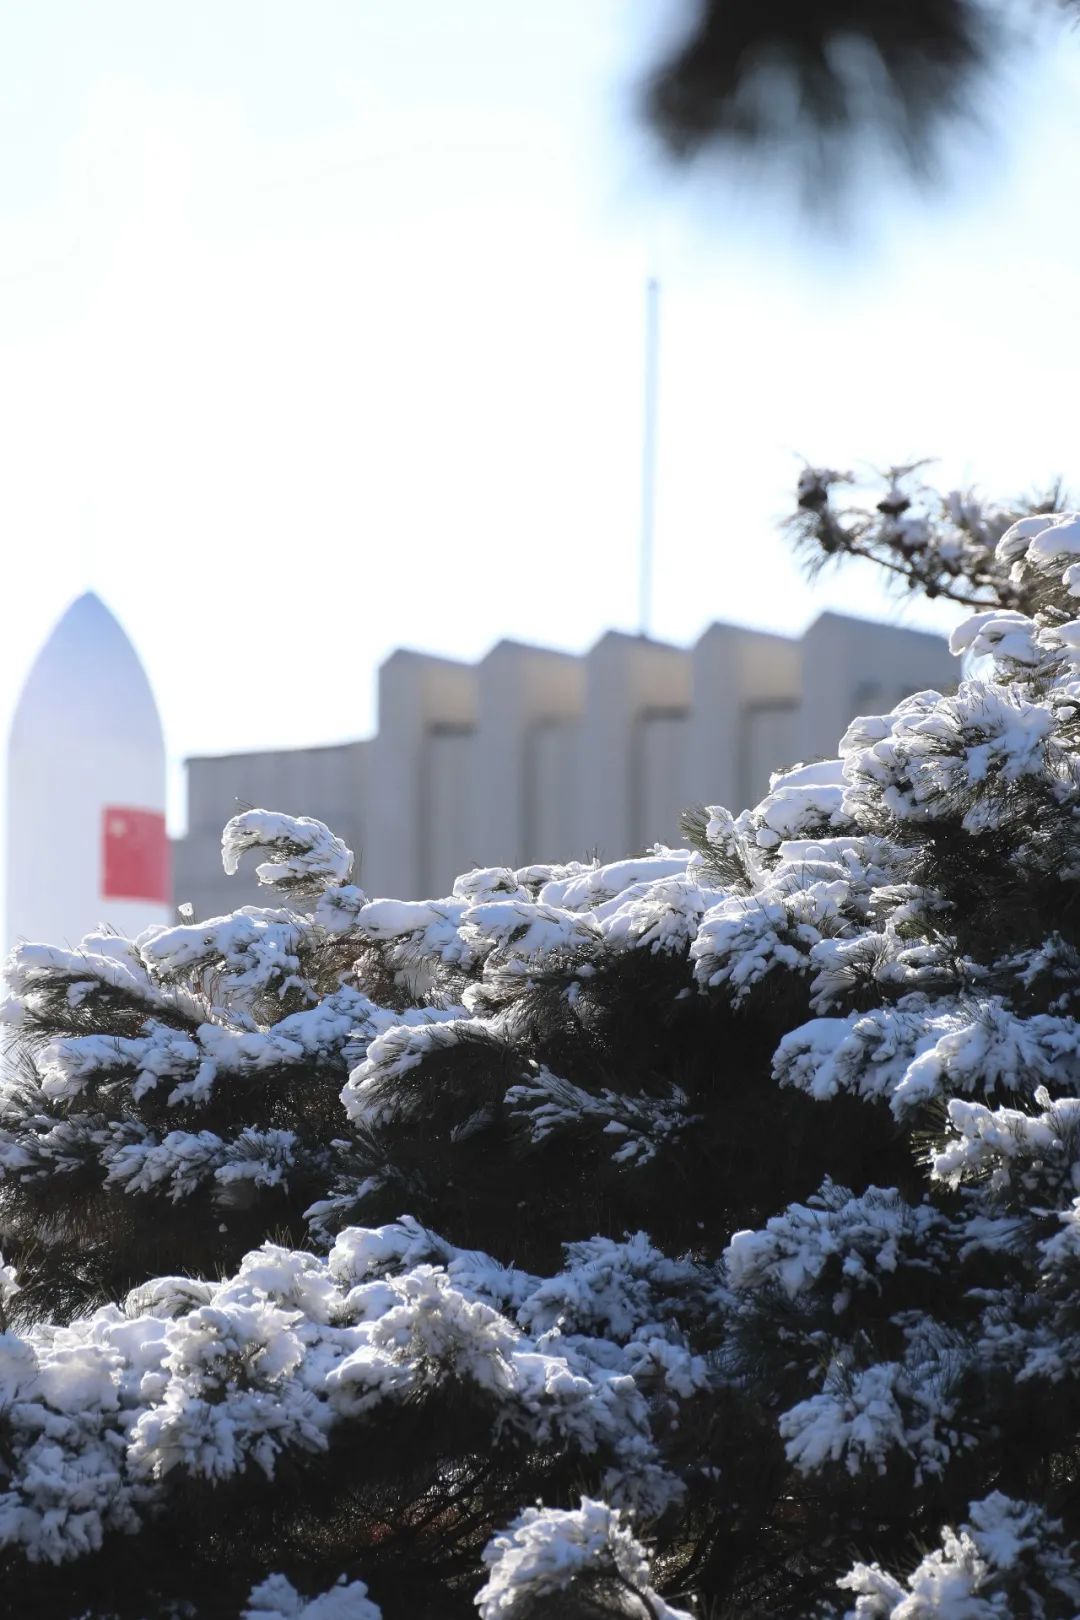 东北电力大学雪景图片